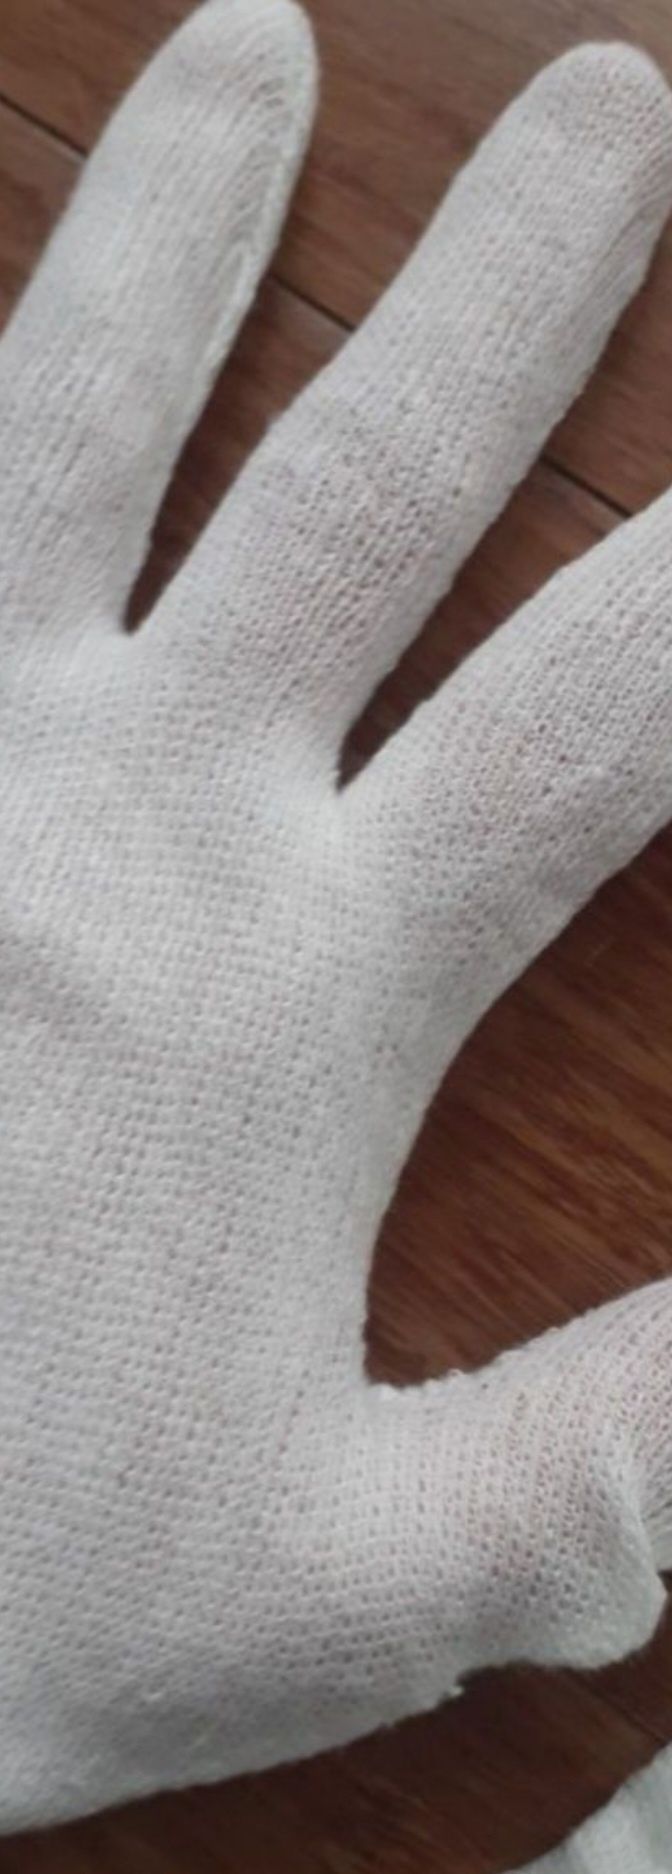 Rękawice do niskich zagrożeń, bawełniane, nowe, 10par